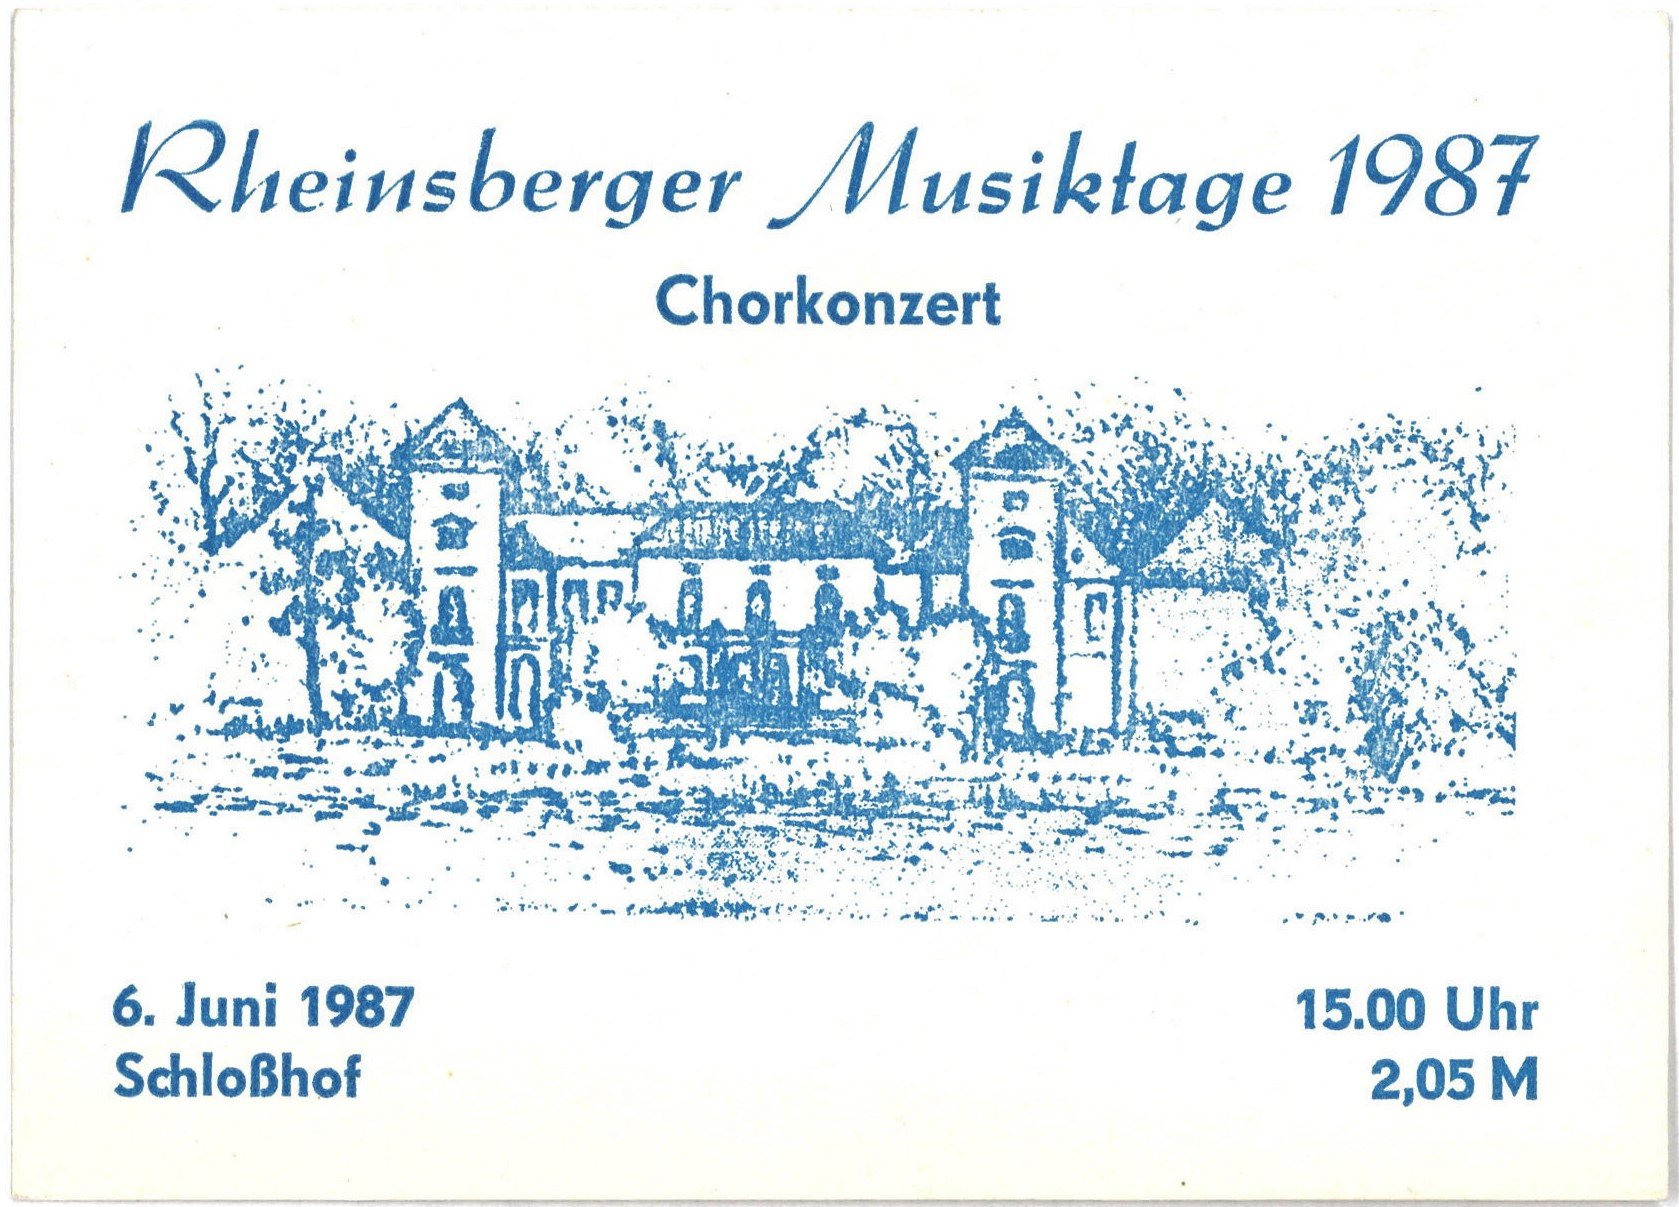 Rheinsberg: Rheinsberger Musiktage 1987 (Landesgeschichtliche Vereinigung für die Mark Brandenburg e.V., Archiv CC BY)